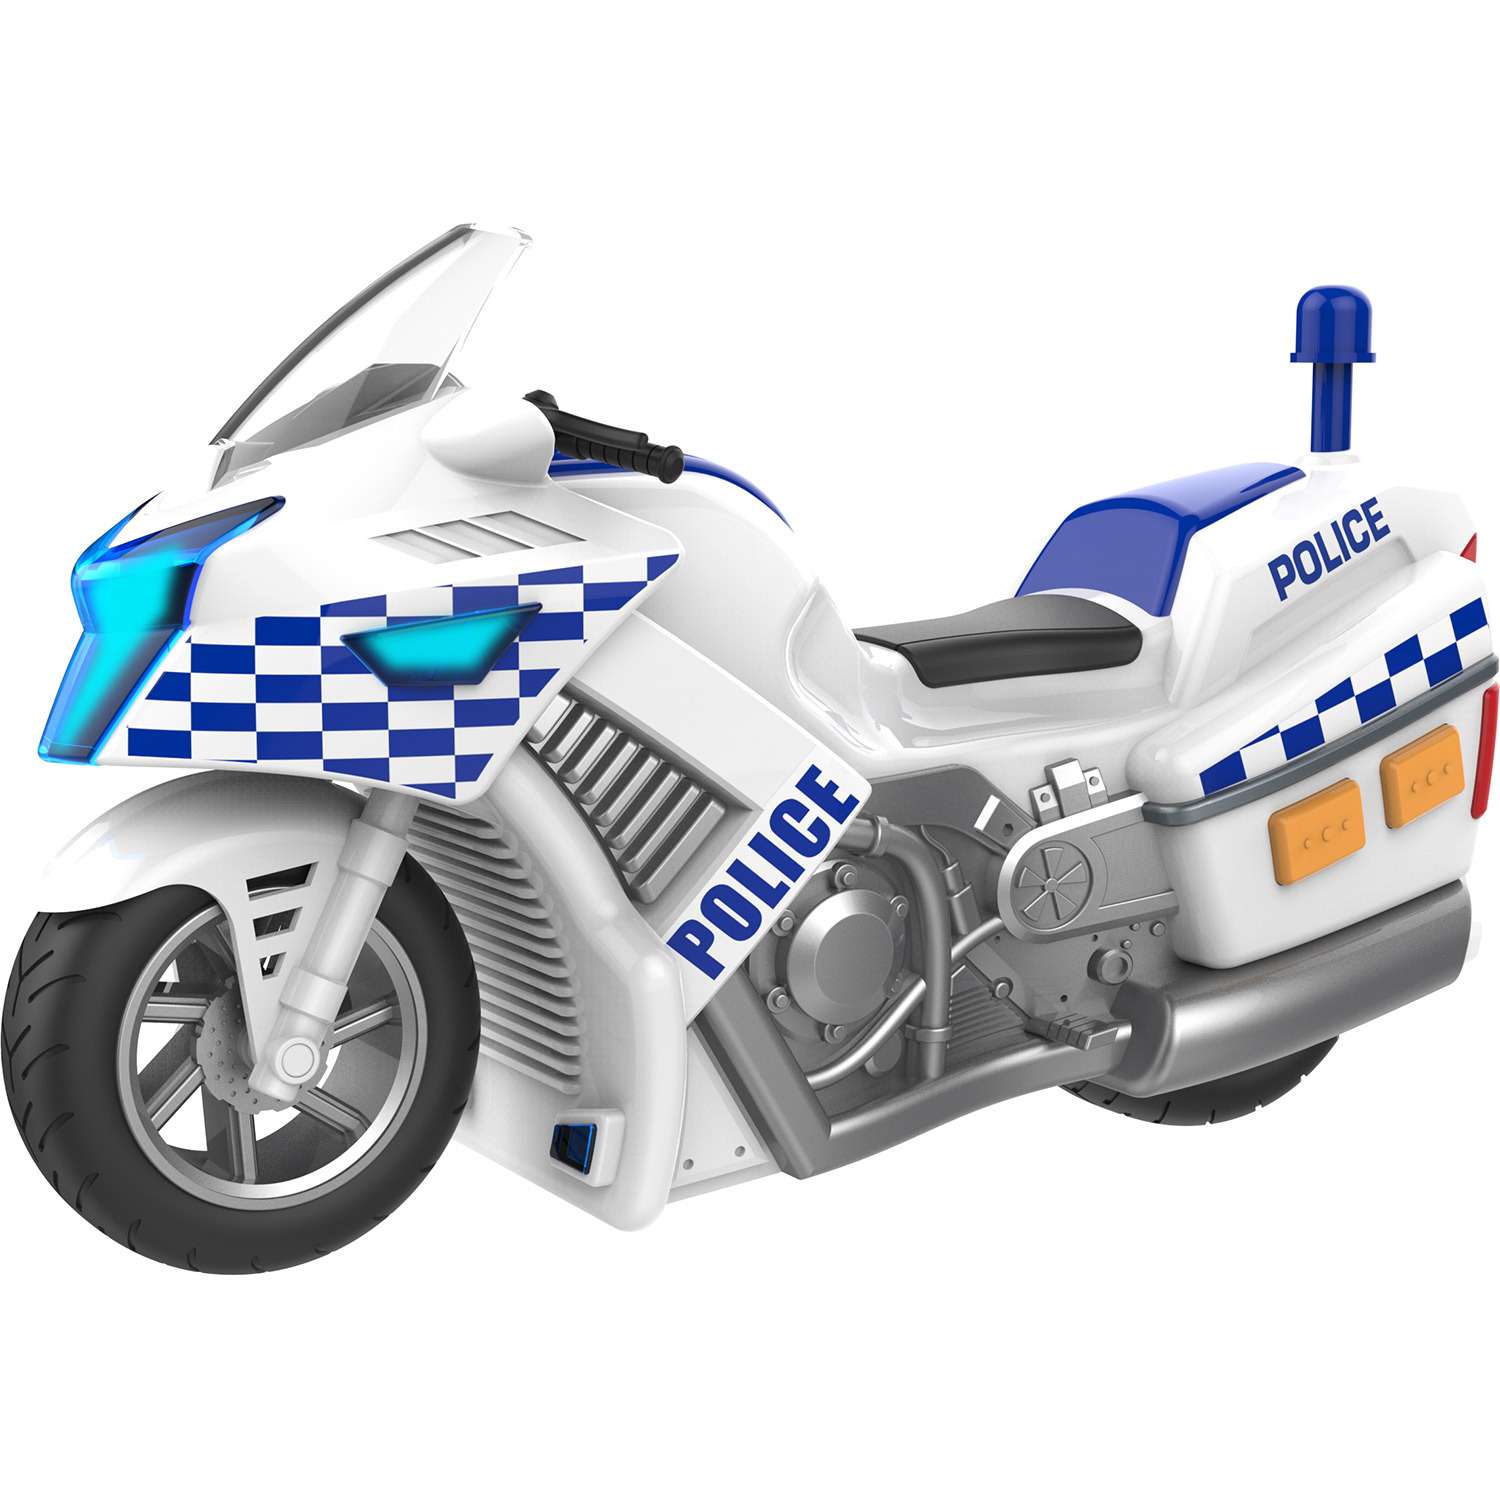 Мини мотоцикл HTI (Roadsterz) полицейский 1416563 1416563 - фото 6